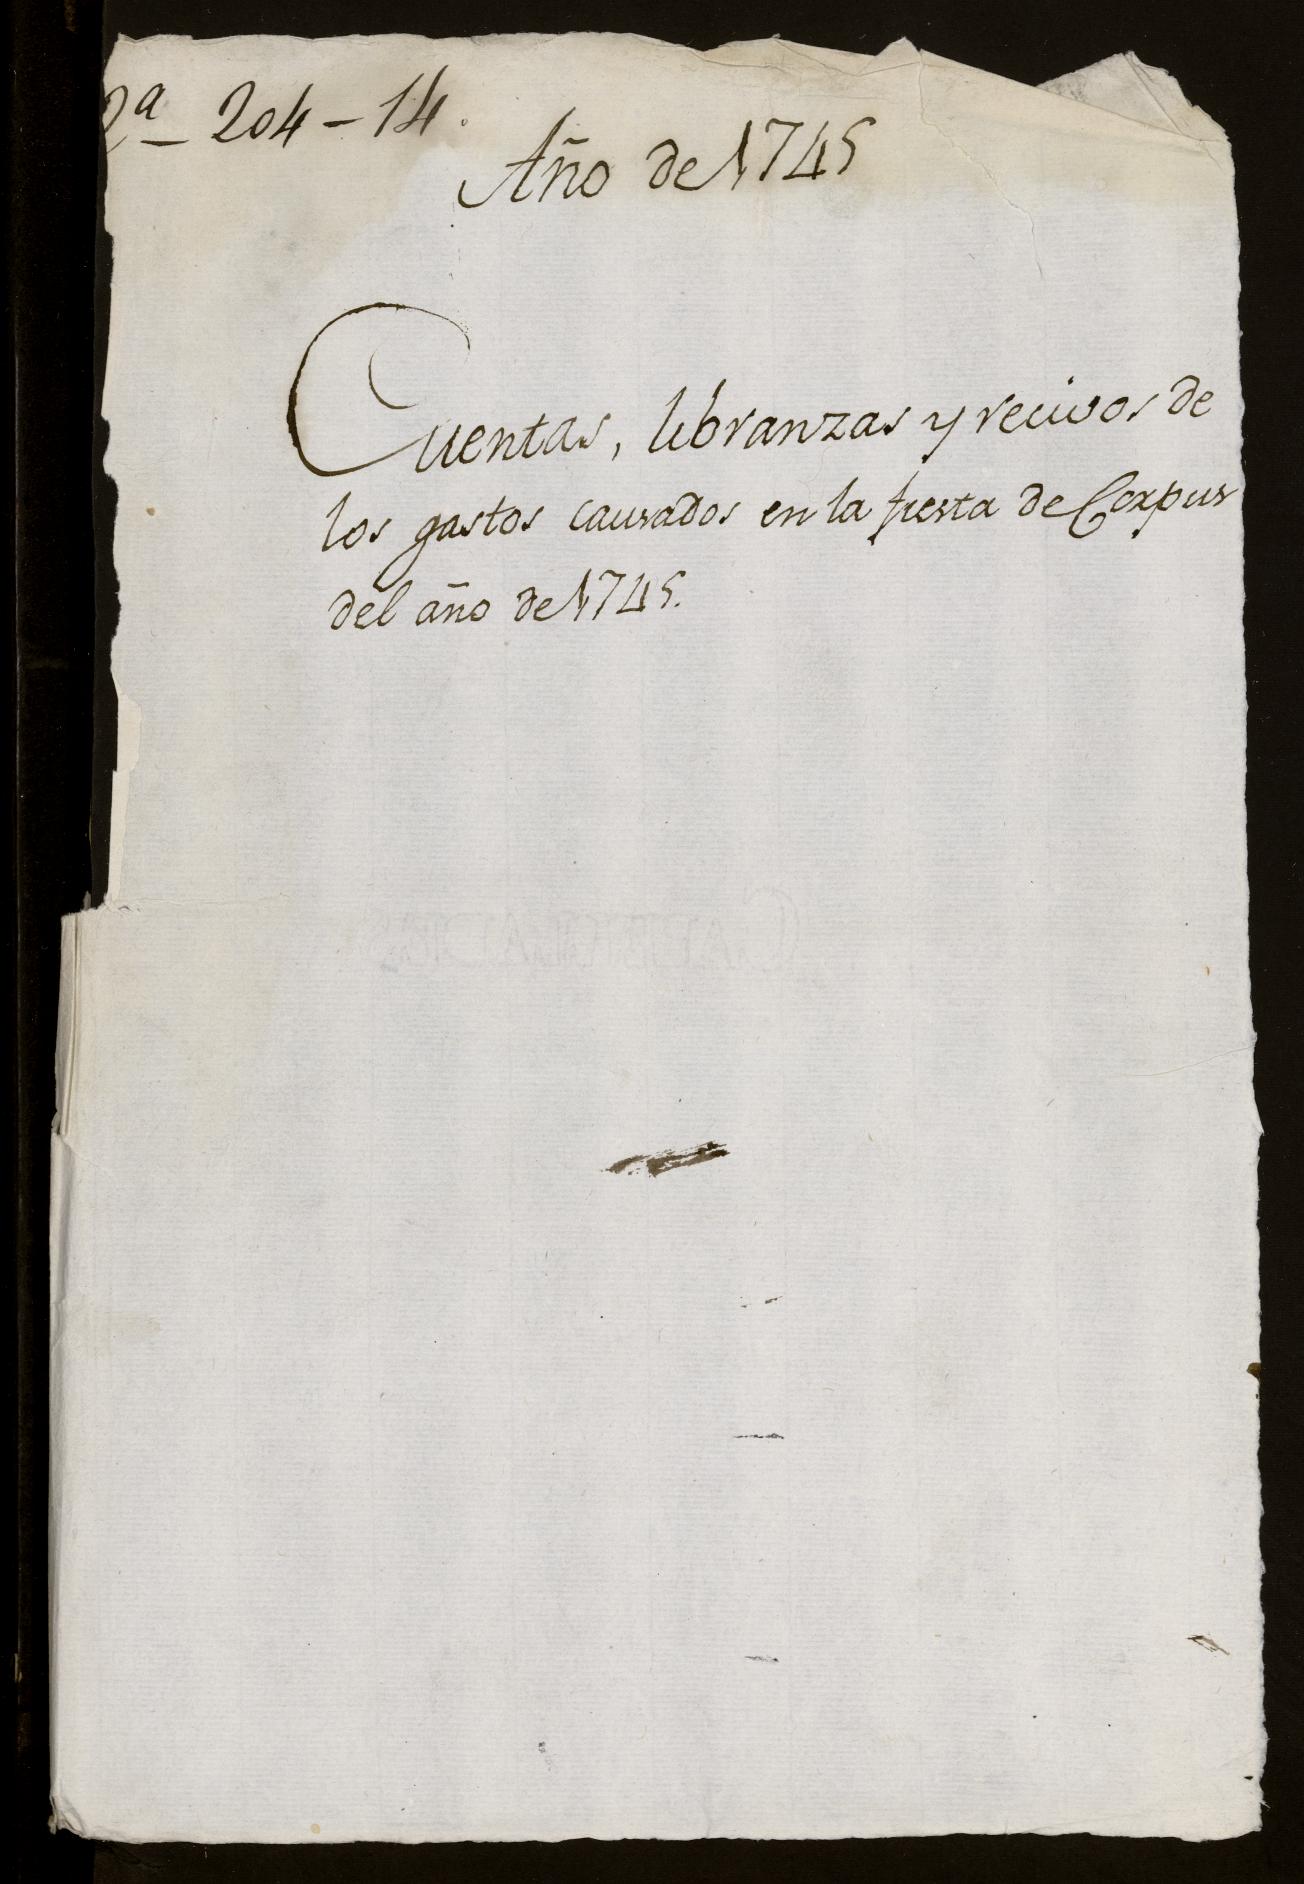 Cuentas, libranzas y recibos de los gastos causados en las fiestas del Corpus del año 1745